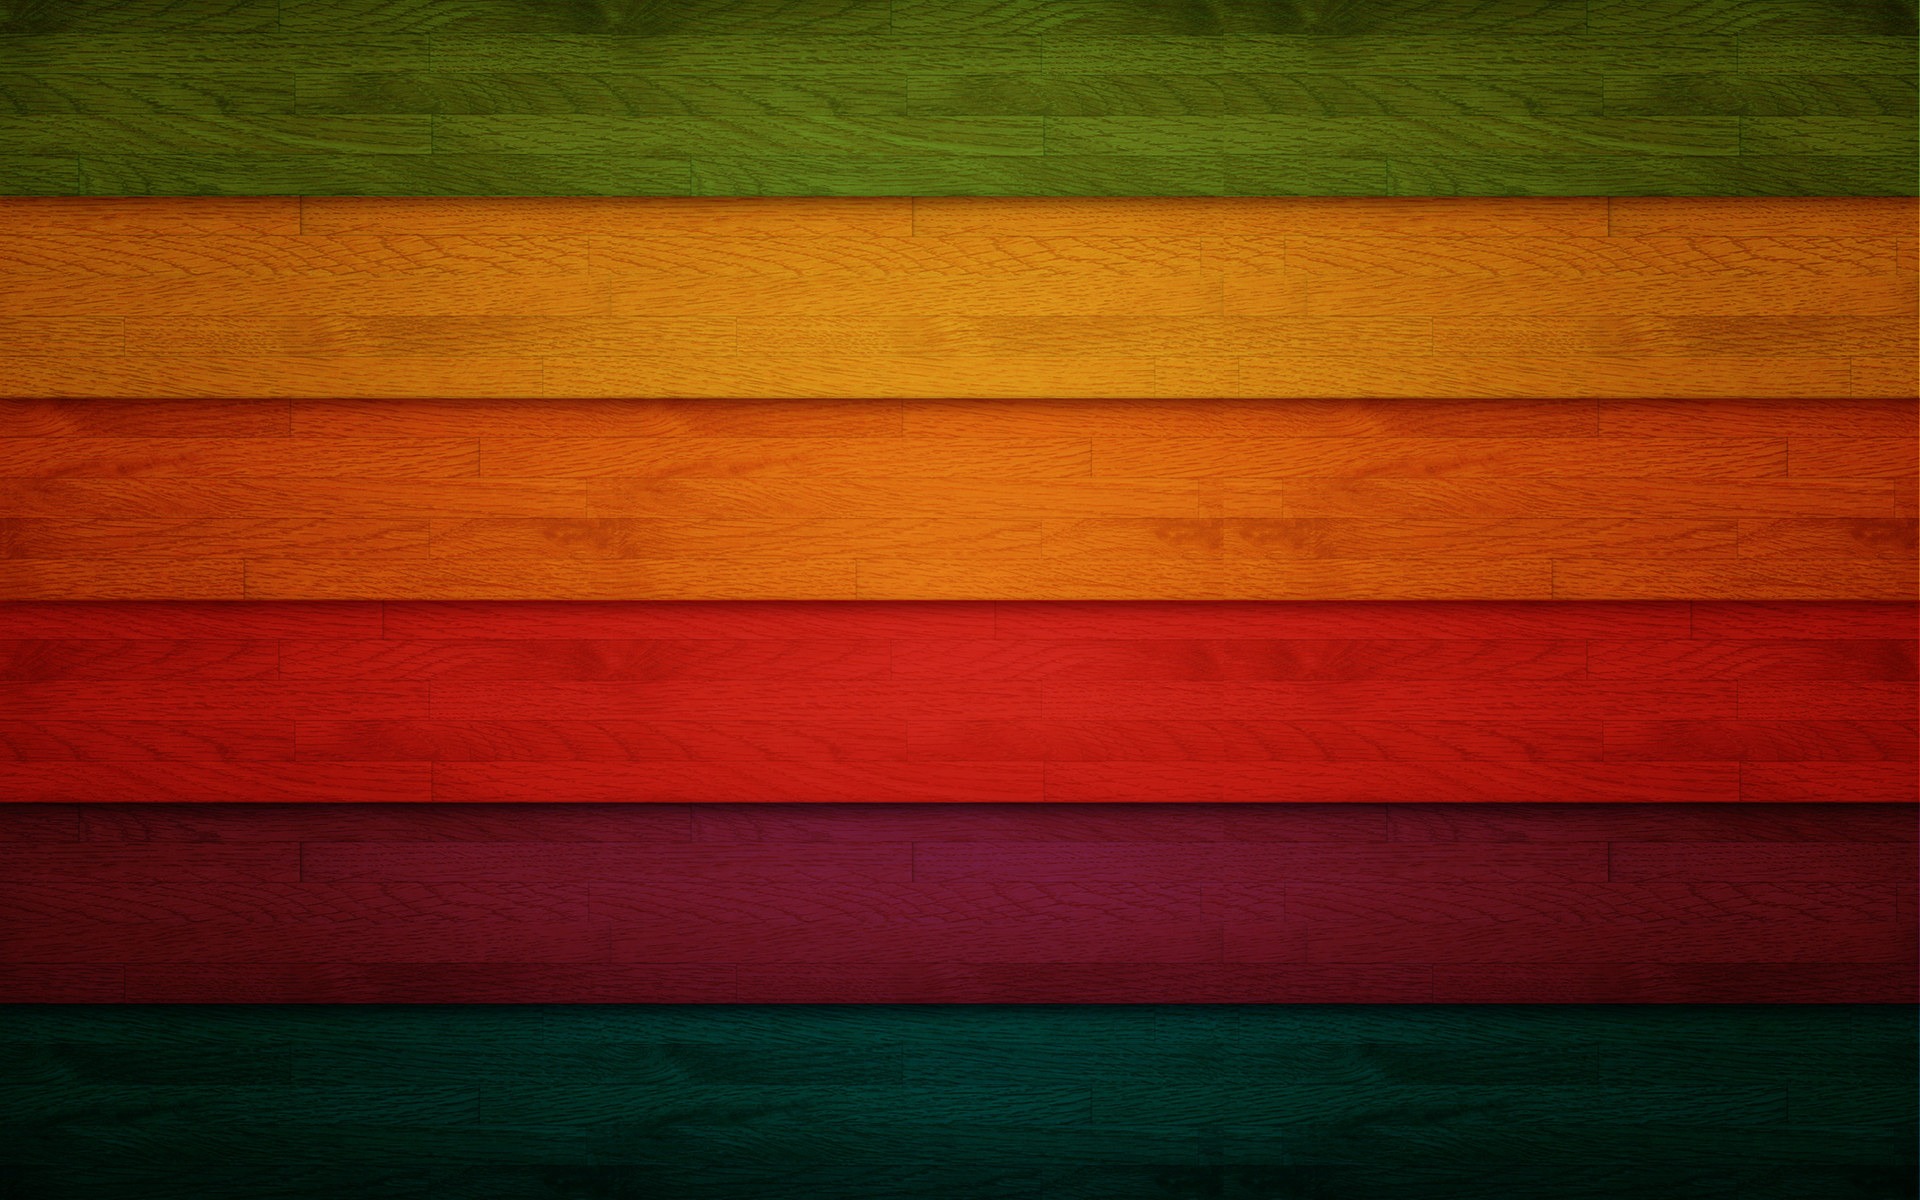 彩虹创意设计壁纸(5)